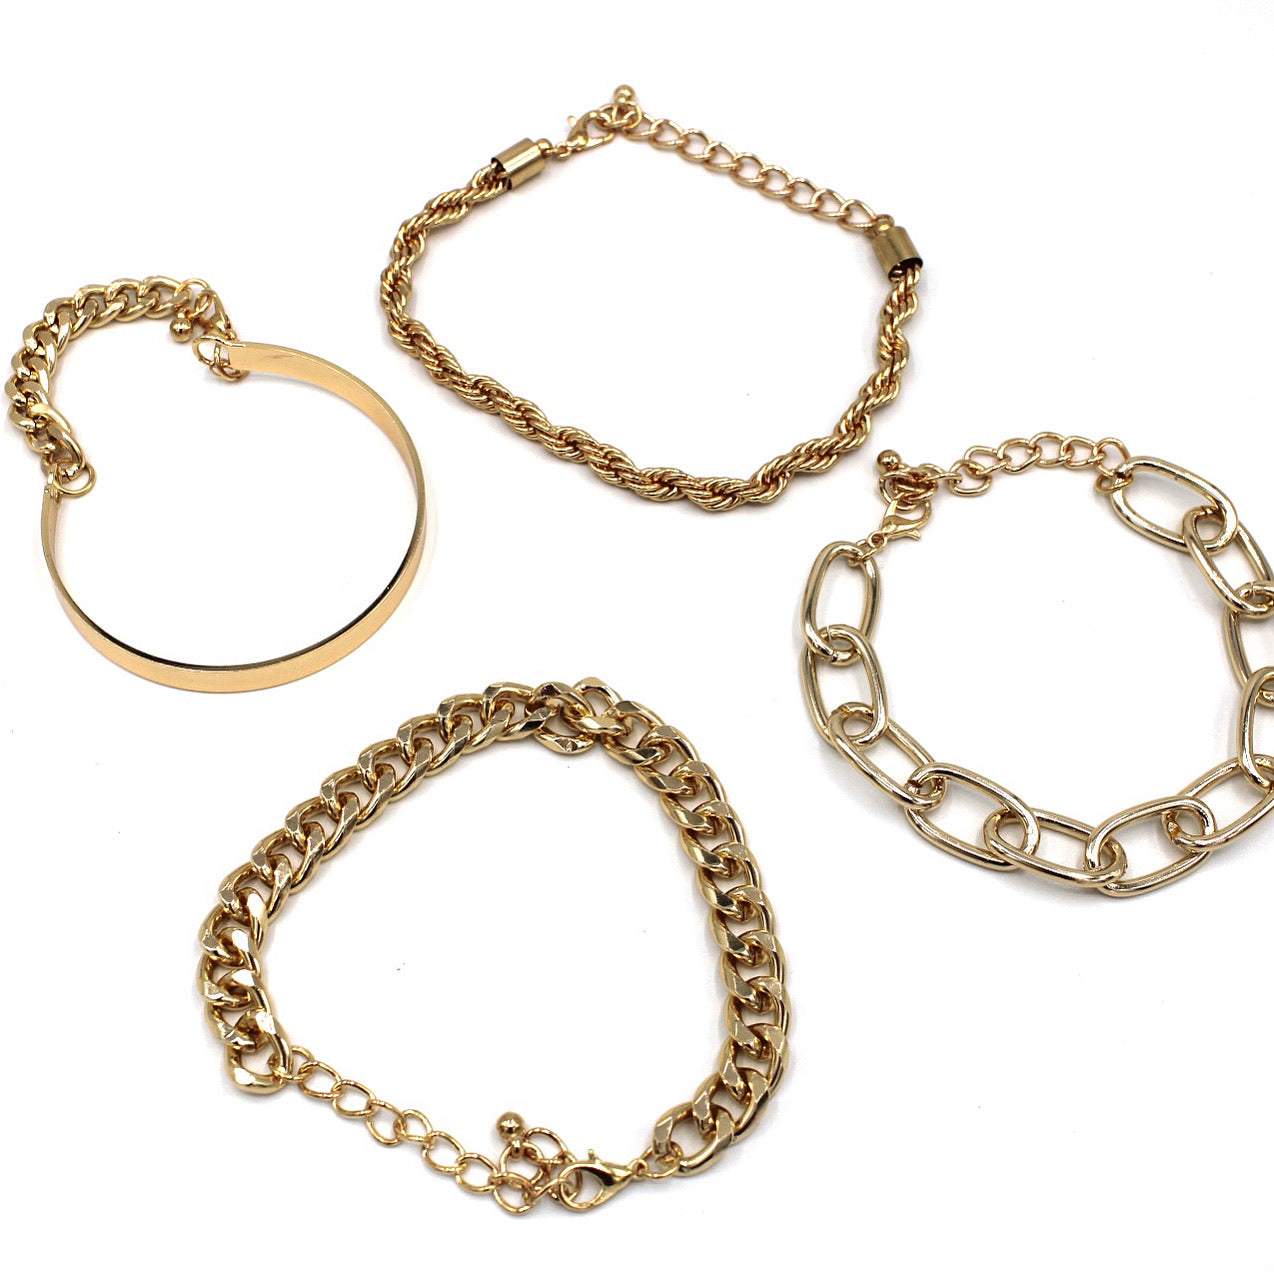 4 piece link bracelet set - Monique Fashion Accessories